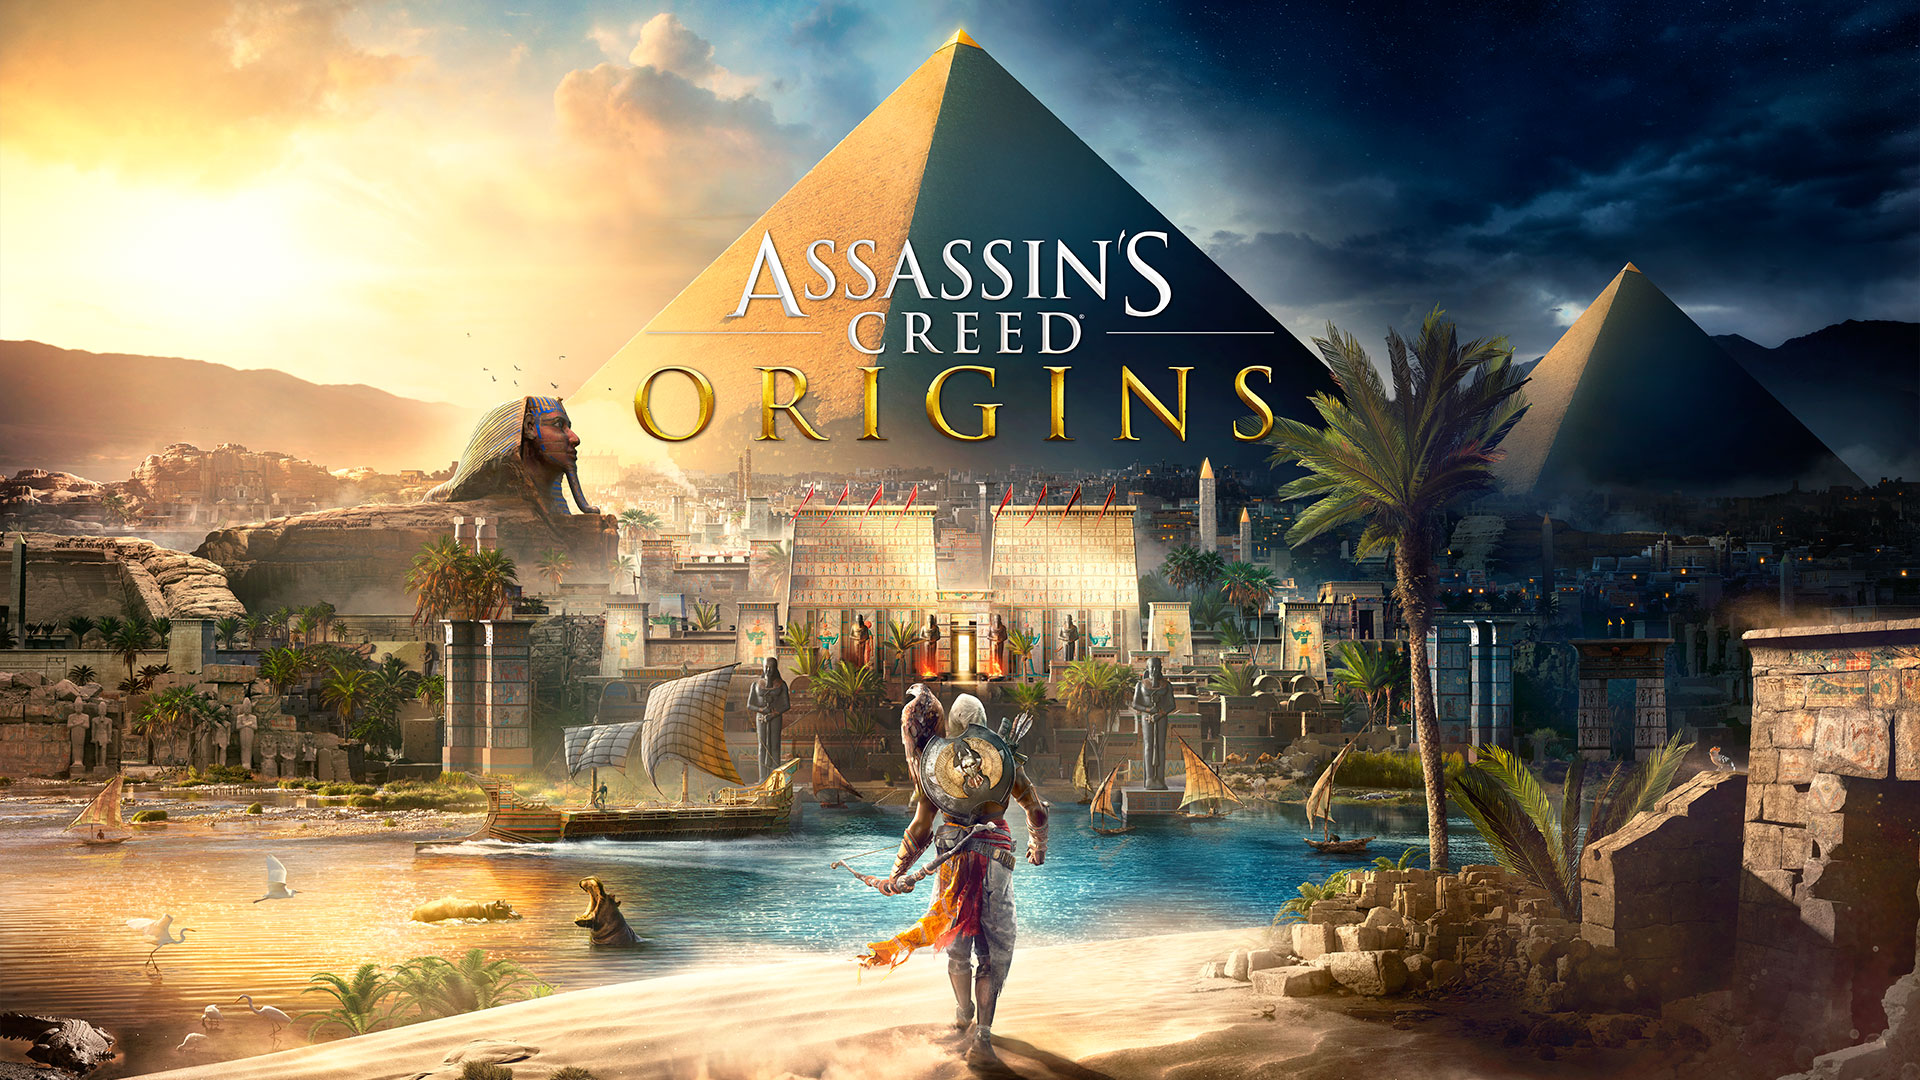 الاعلان رسمياً عن لعبة Assassin's Creed Origins و كل ما تود أن تعرفه عنها